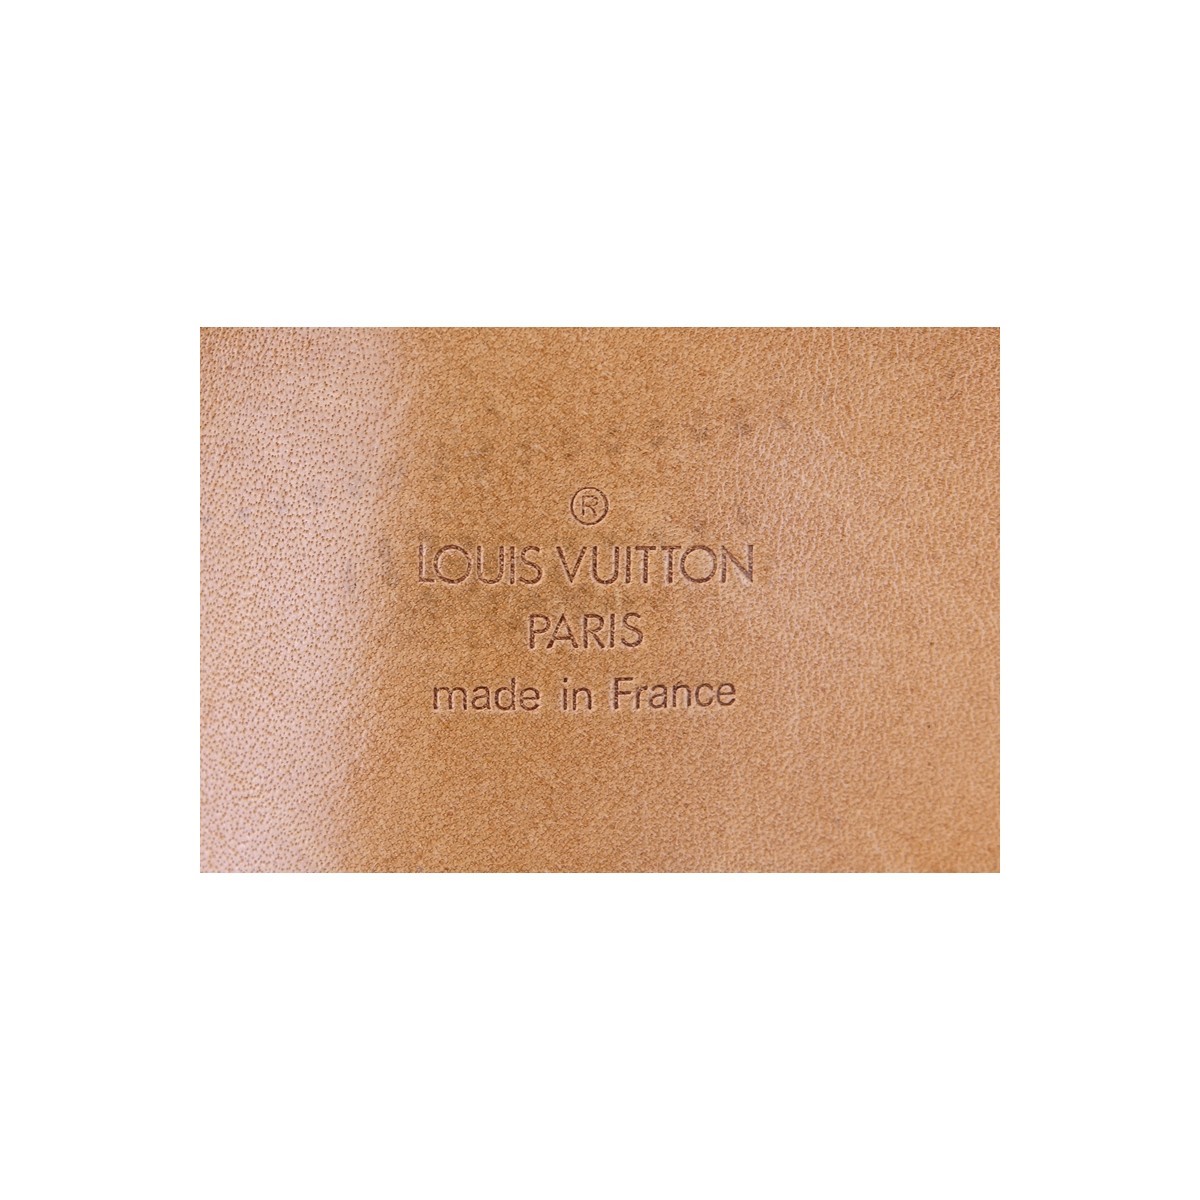 Louis Vuitton Brown Monogram Coated Canvas Sirius 45 Travel Bag. Golden brass hardware, beige interior, vachetta leather.